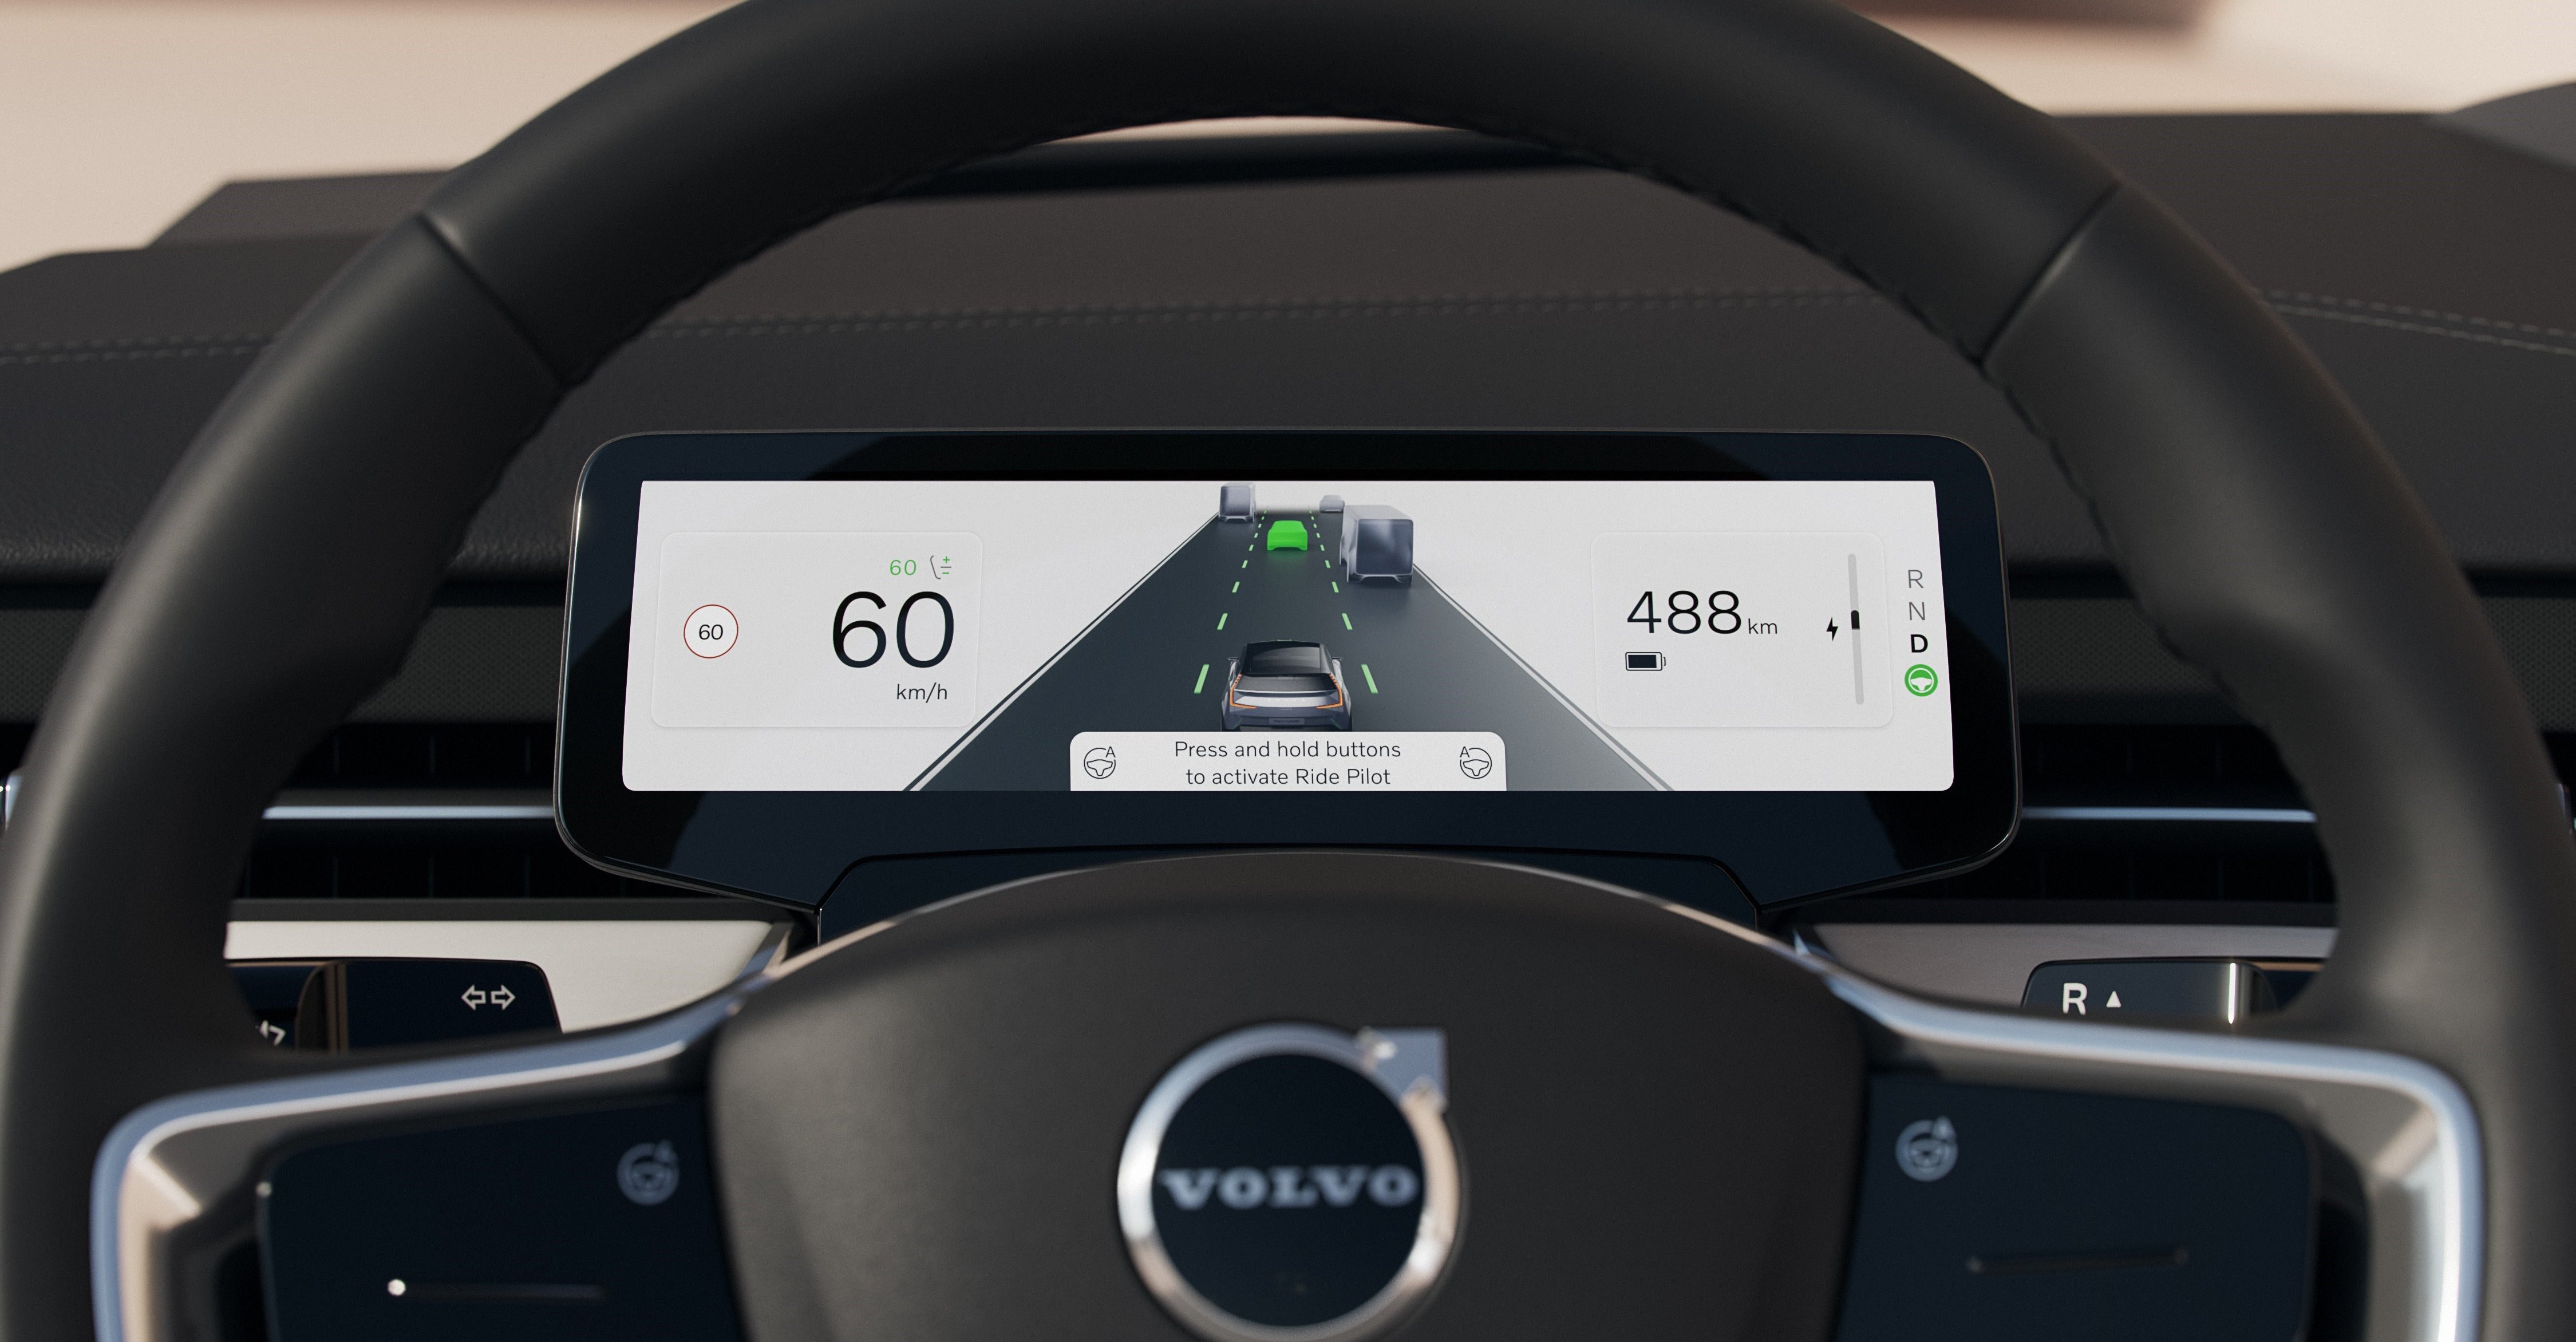 Dashboard und Digitalanzeige ein modernes Auto, Kilometerstand